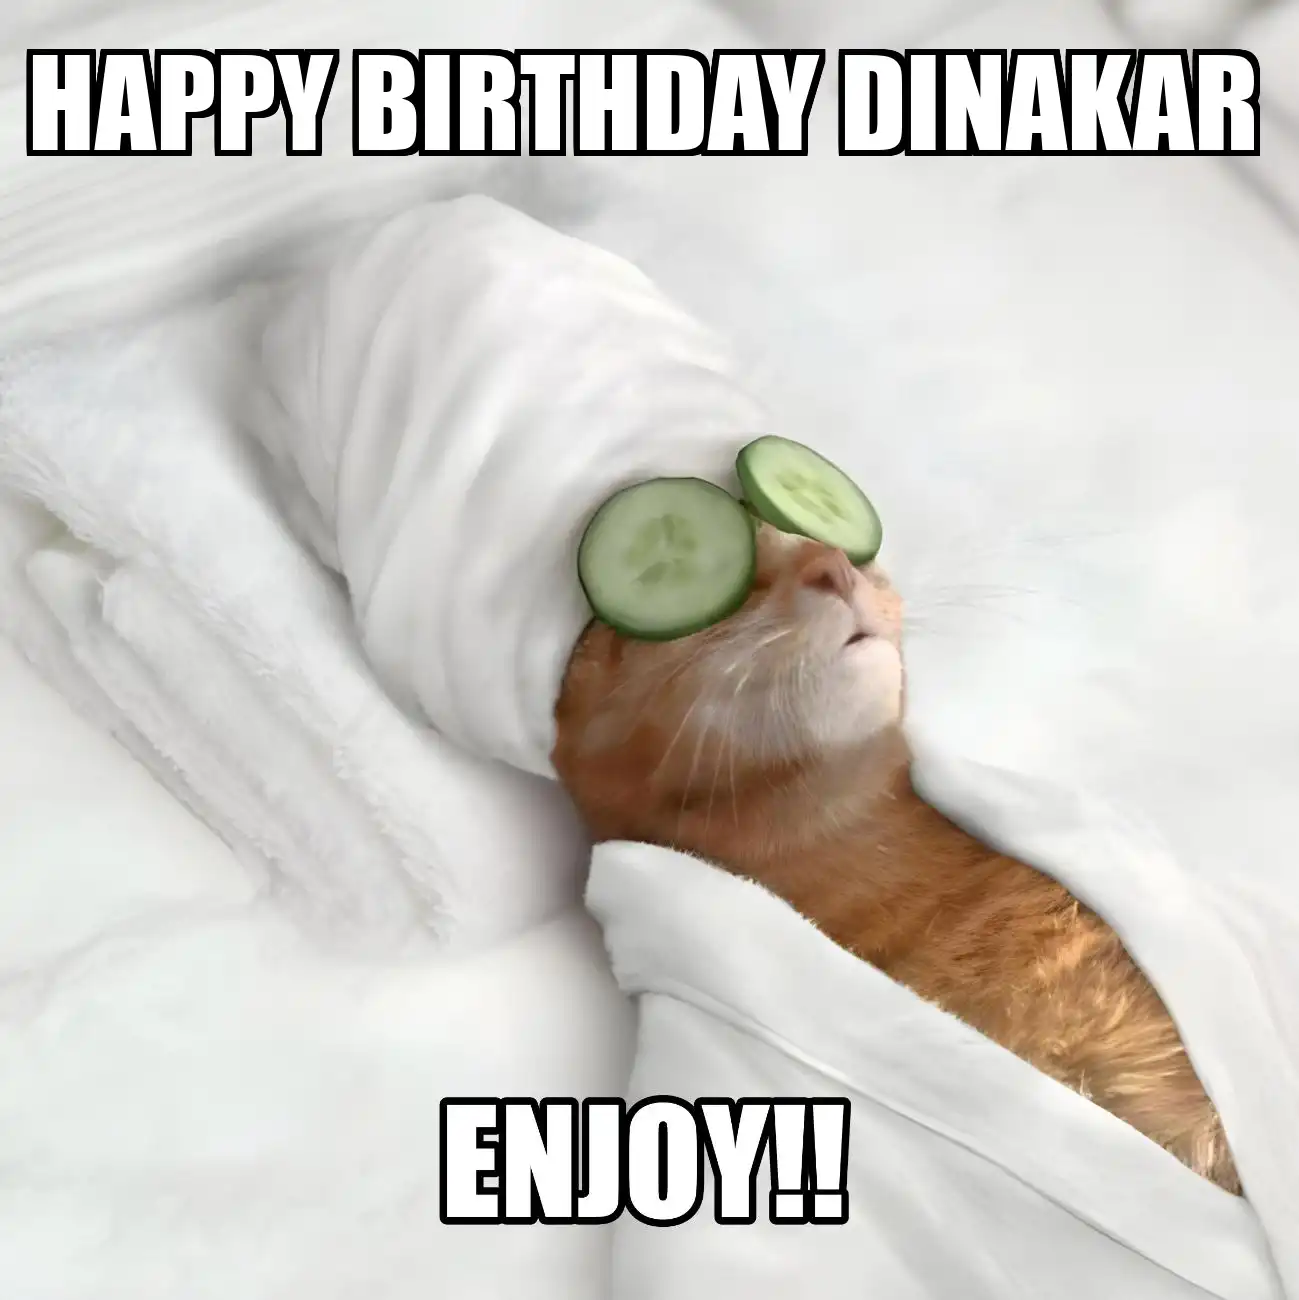 Happy Birthday Dinakar Enjoy Cat Meme